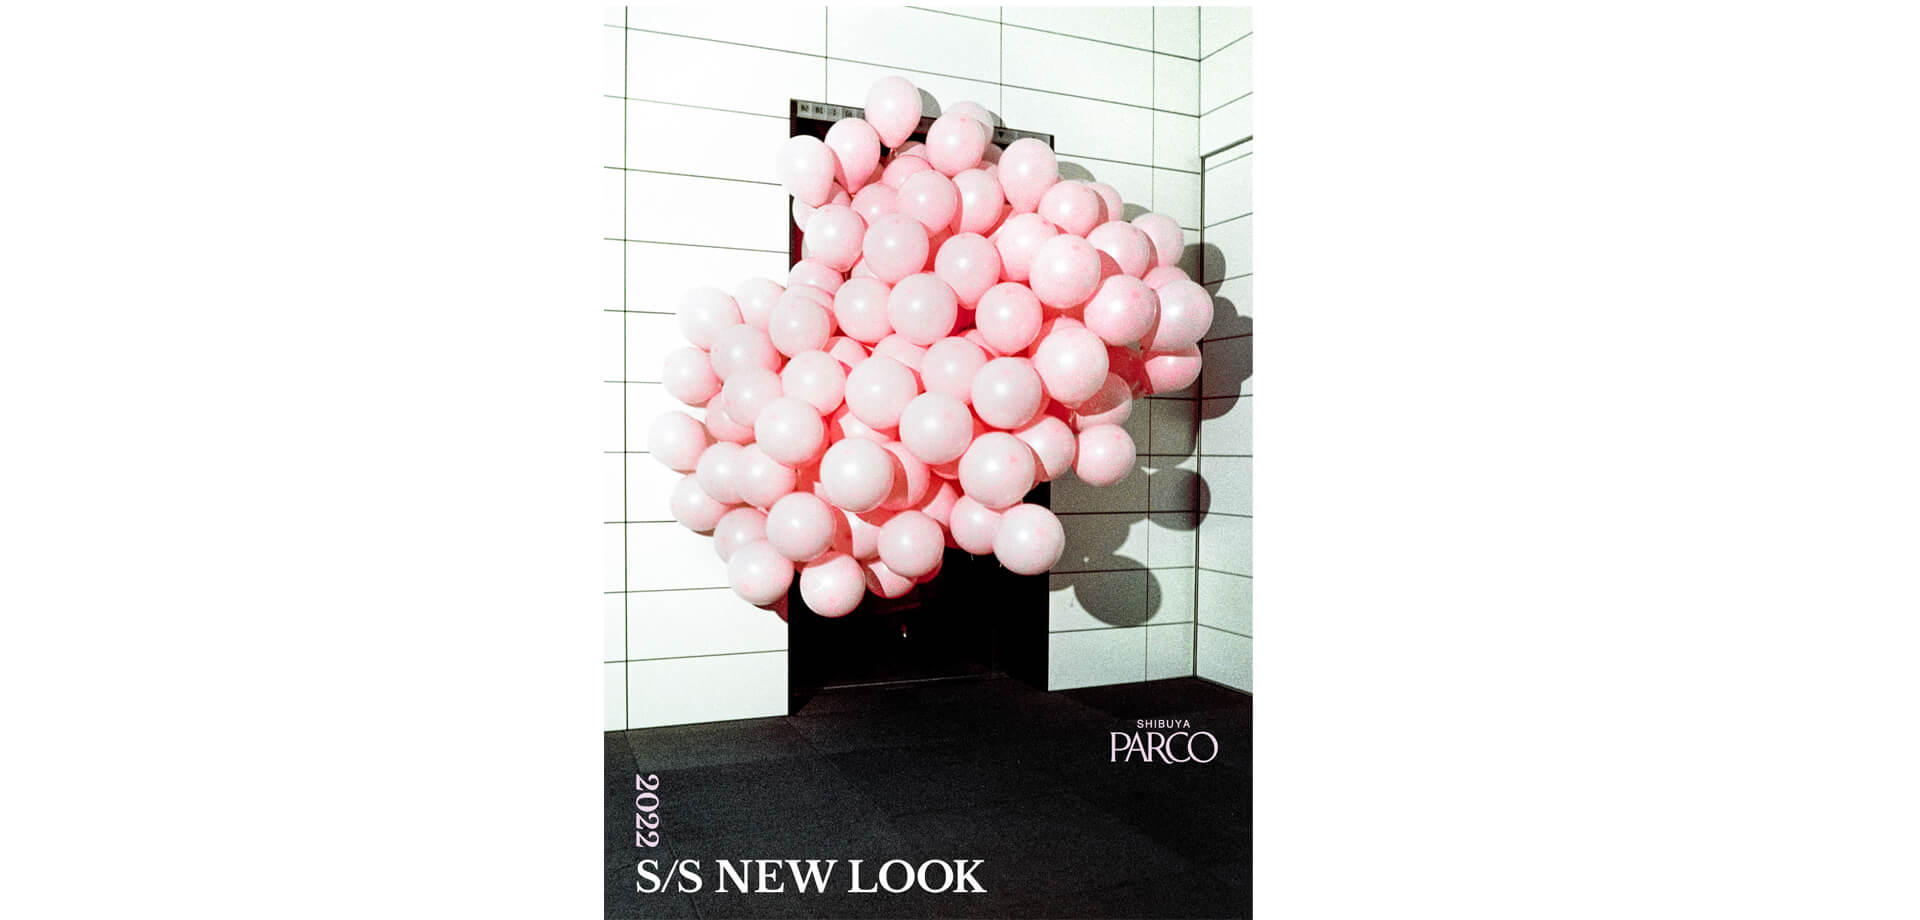 2022年春夏ファッションキャンペーン「SHIBUYA PARCO 2022 S/S NEW LOOK」